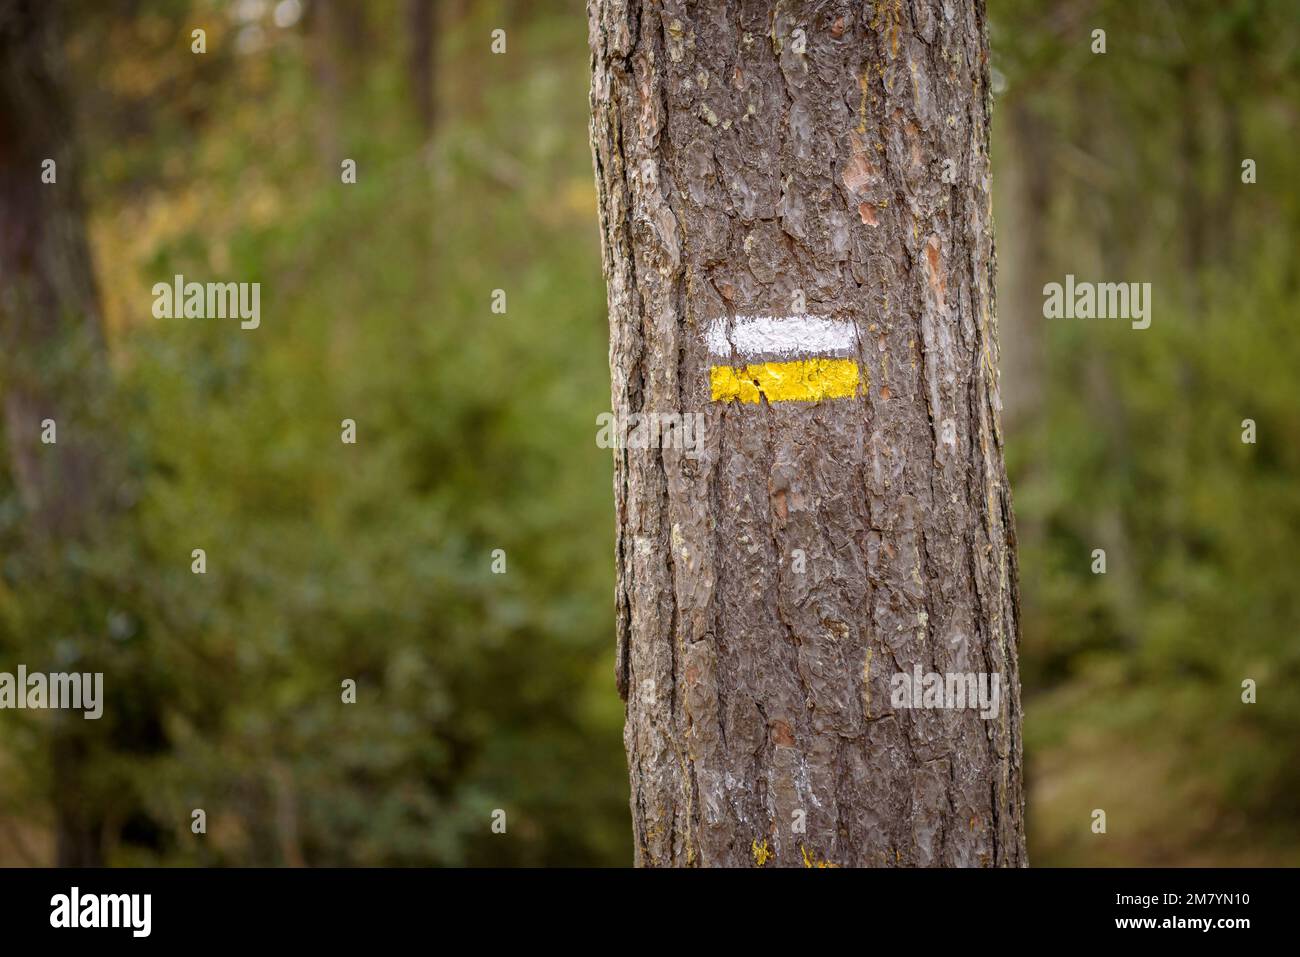 PR segno su un pino nel passo di Pla de l'Agustenc, nei monti del Prades (campo Baix, Tarragona, Catalogna, Spagna) ESP: Señal de PR en un sendero Foto Stock